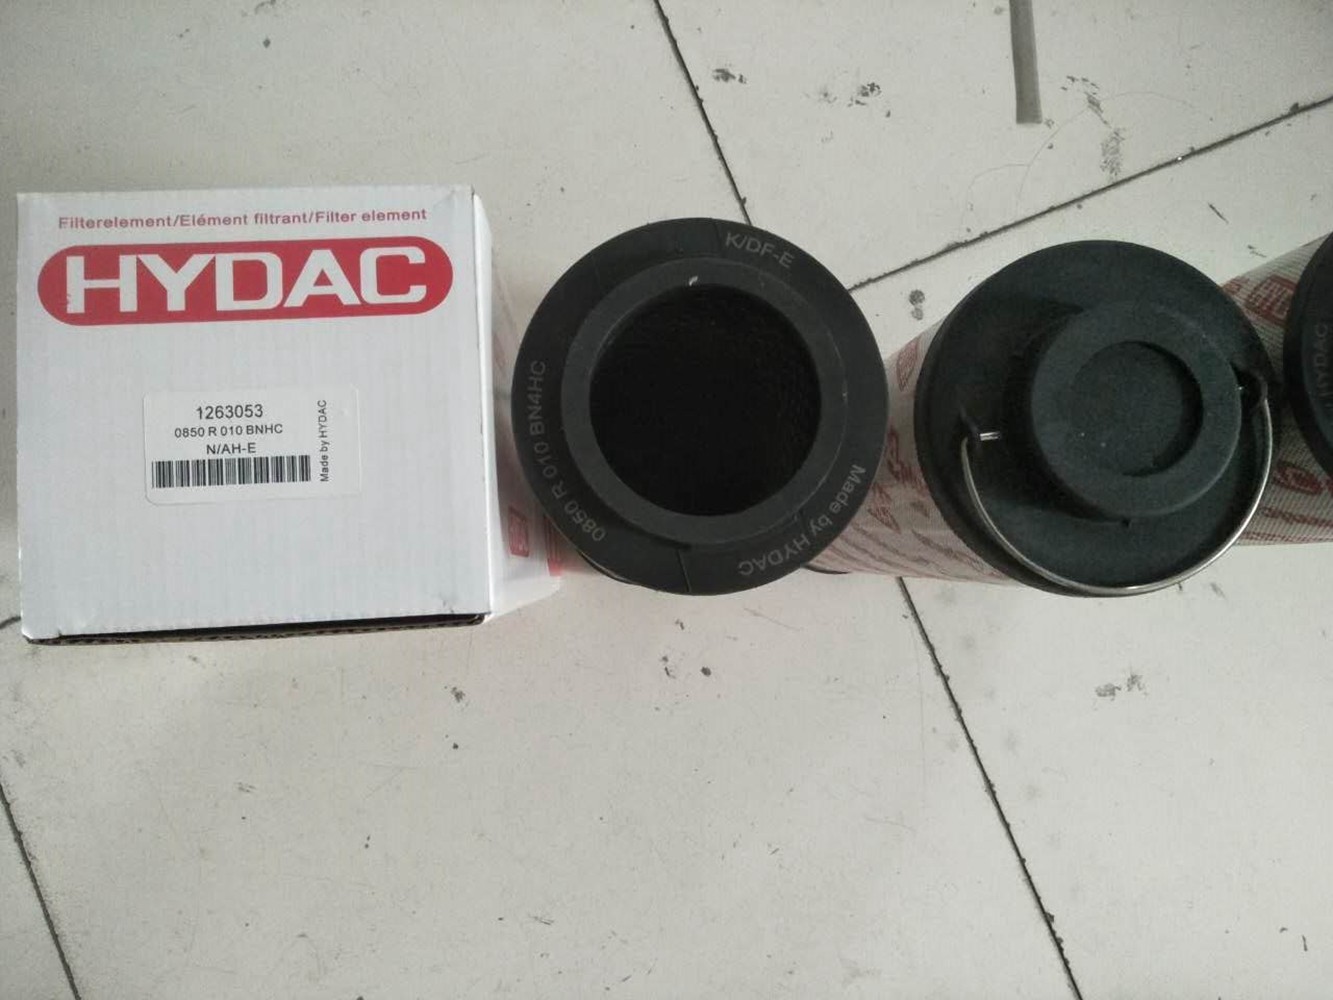 3μM~200μM Hydac Replacement Filter Elements for sale